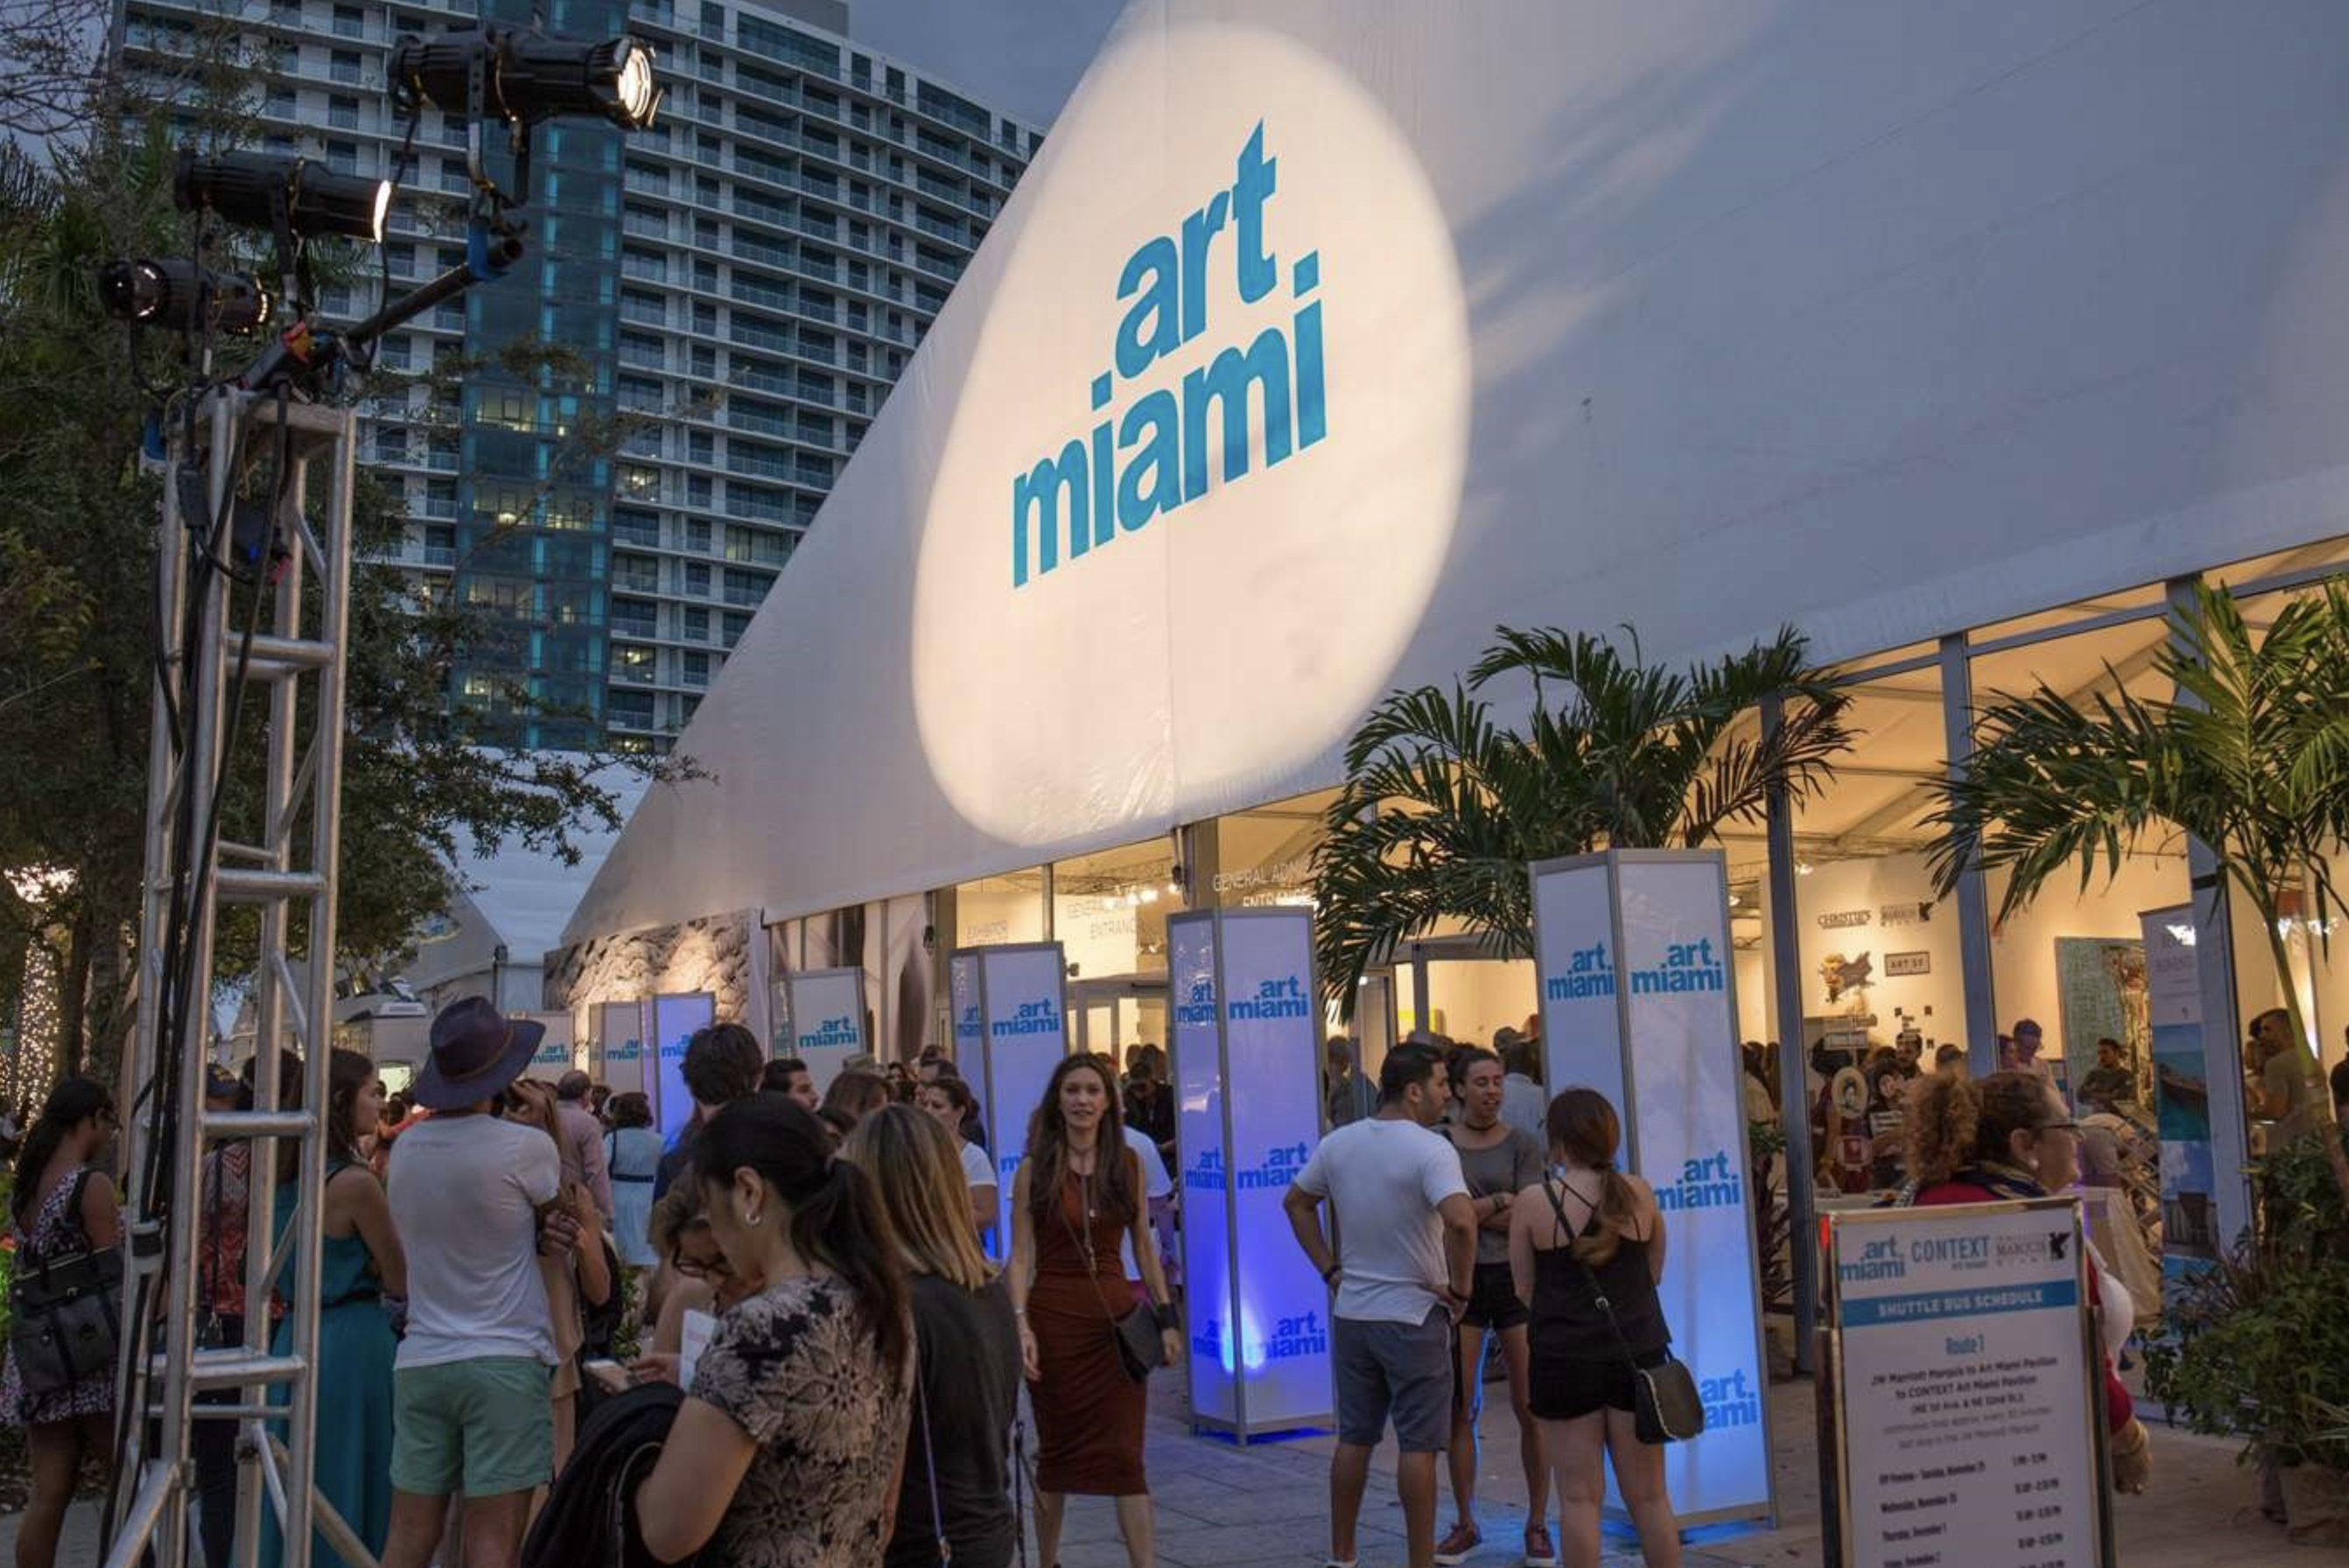 En 1990 Art Miami comenzó una aventura que hoy se ha consolidado e identifica al sur de la Florida.